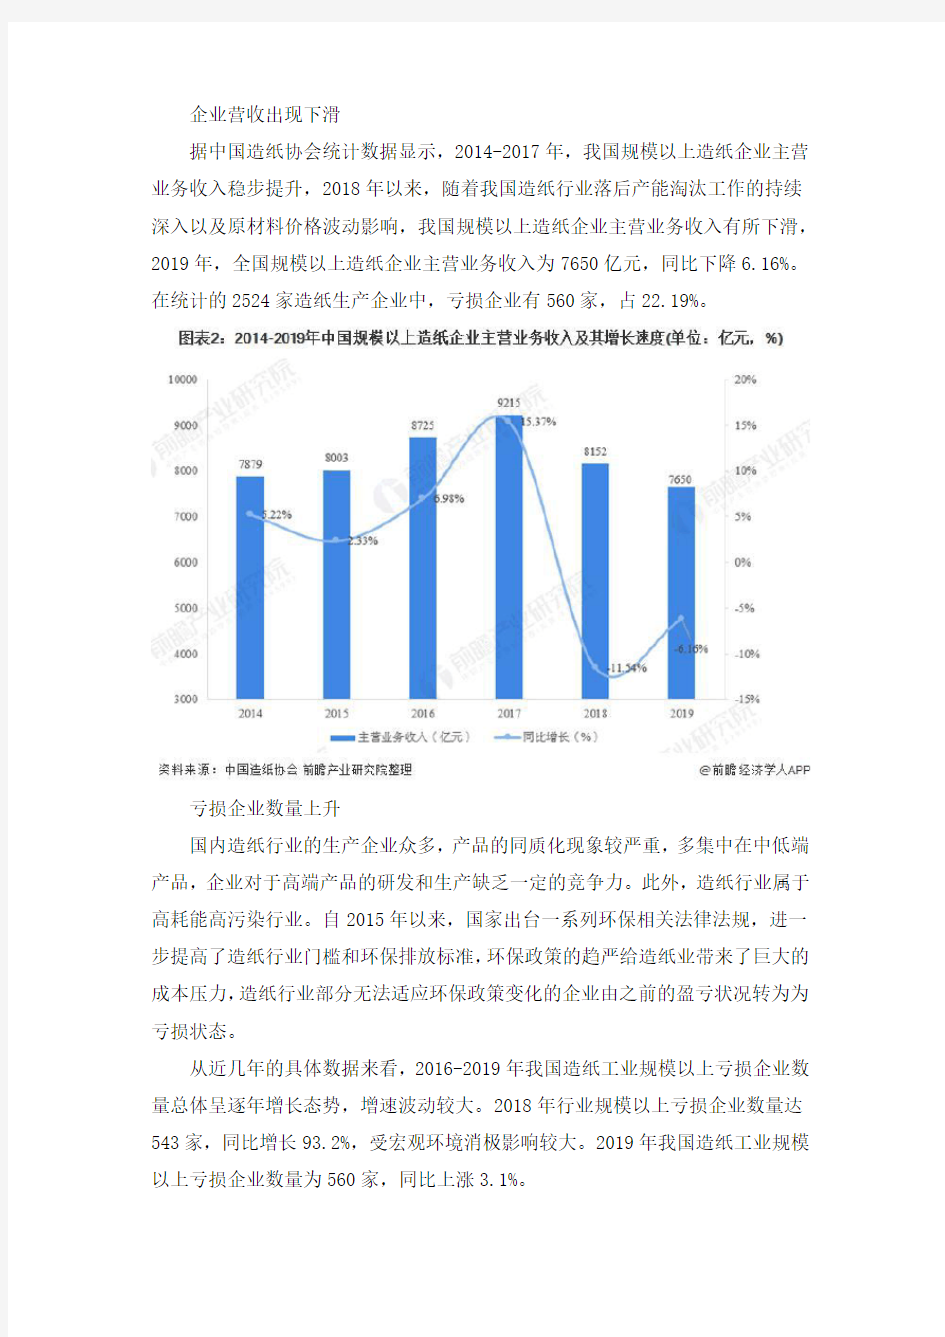 2020年中国造纸行业市场现状及发展趋势分析  企业盈利空间缩小